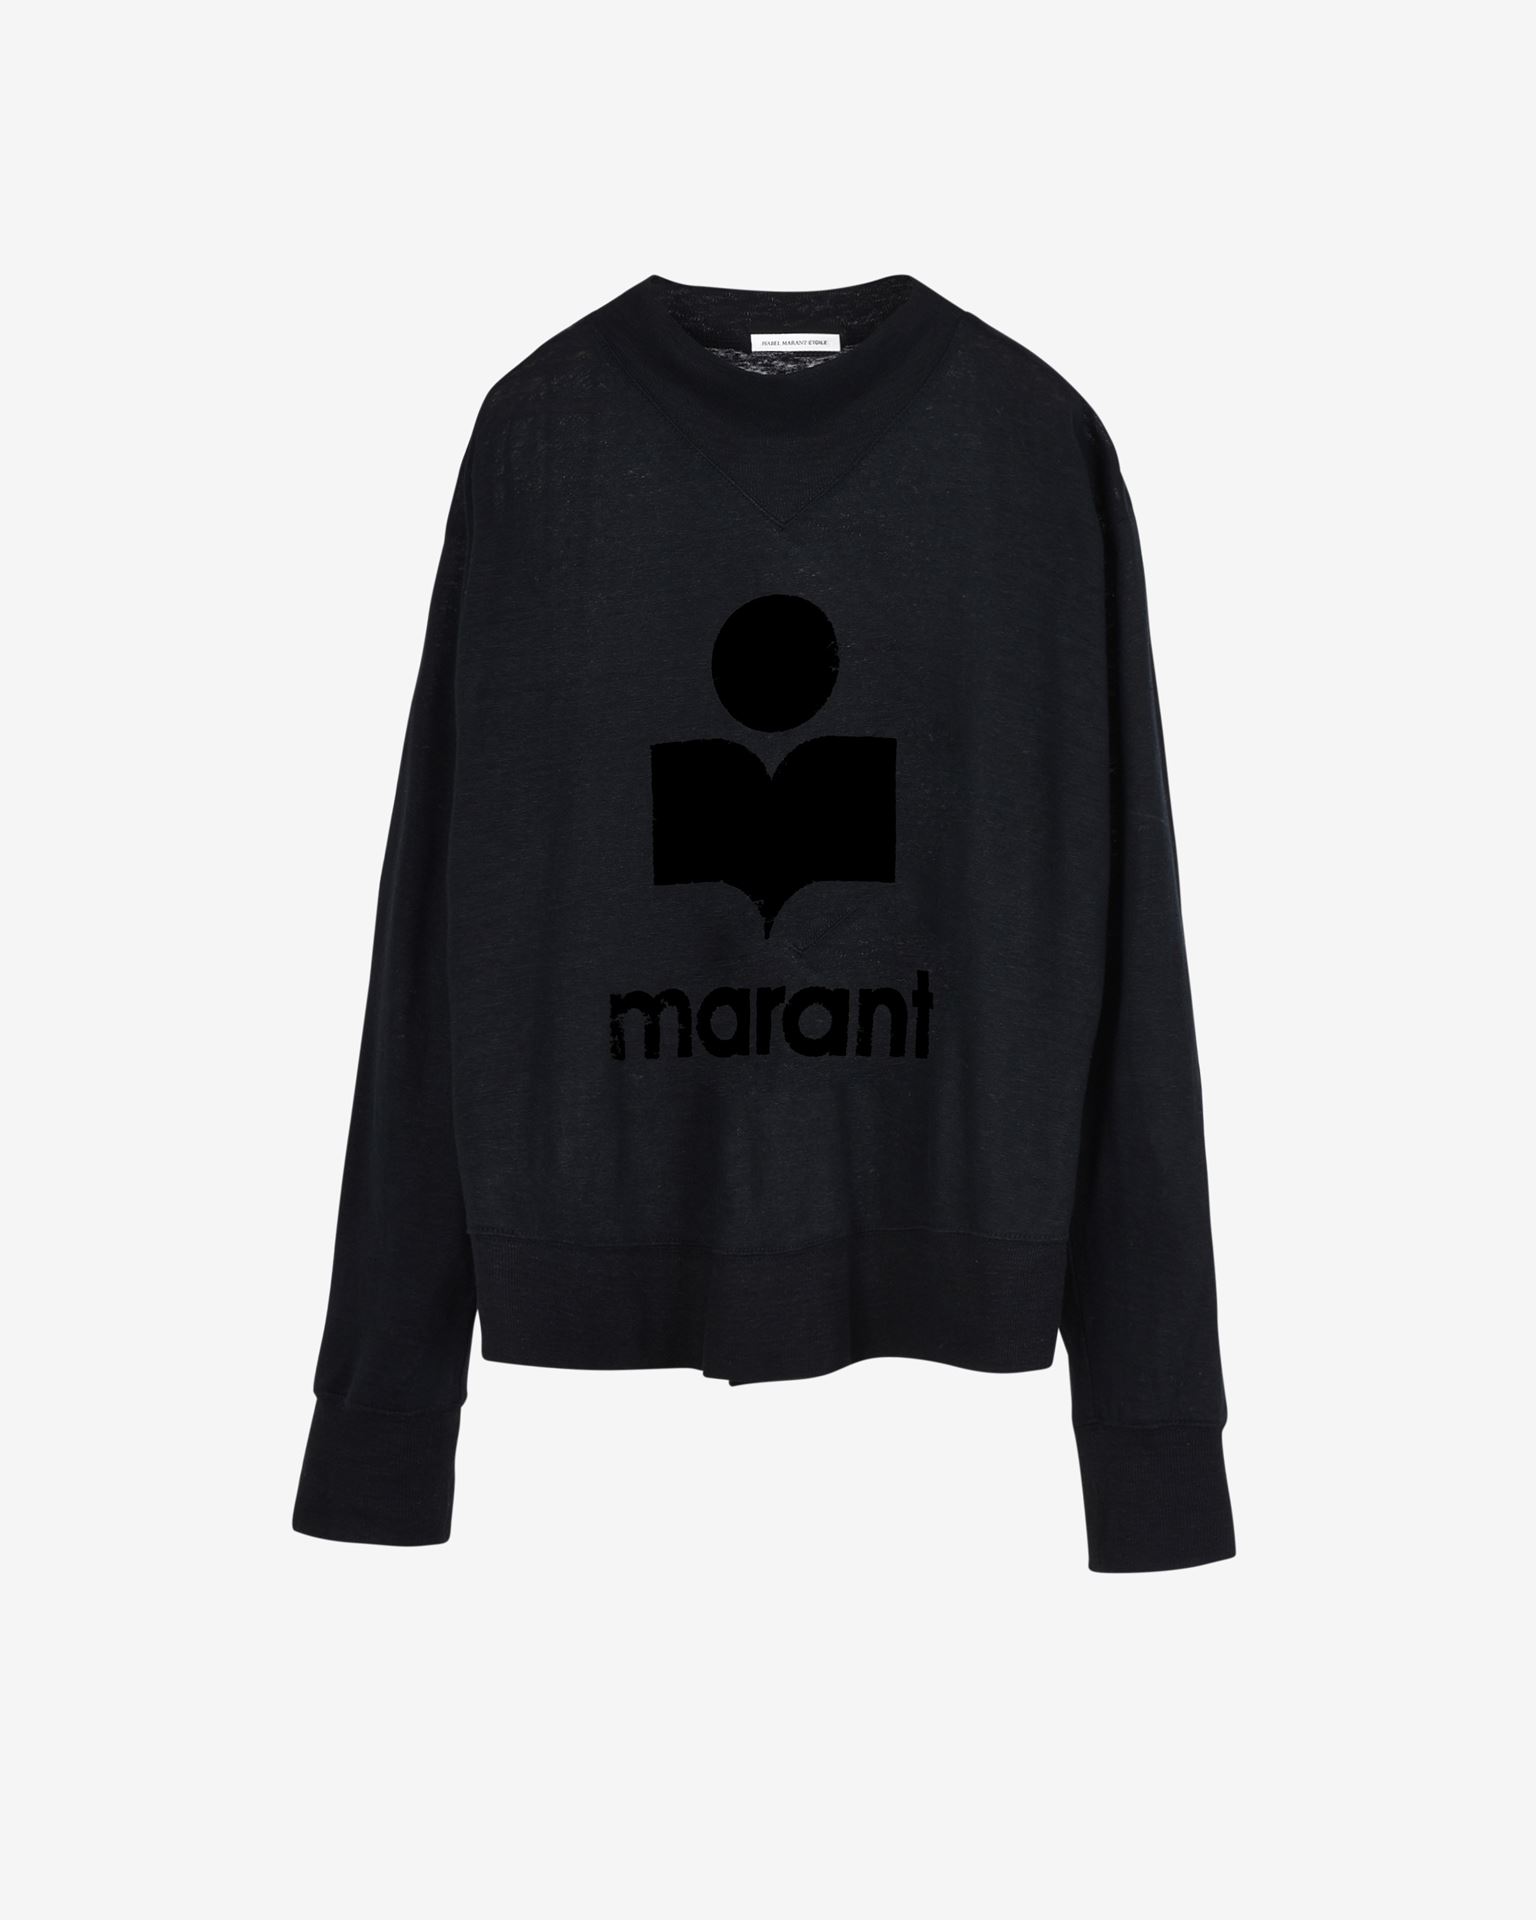 Isabel Marant Marant Étoile, Kilsen Logo Tee-shirt - Women - Black